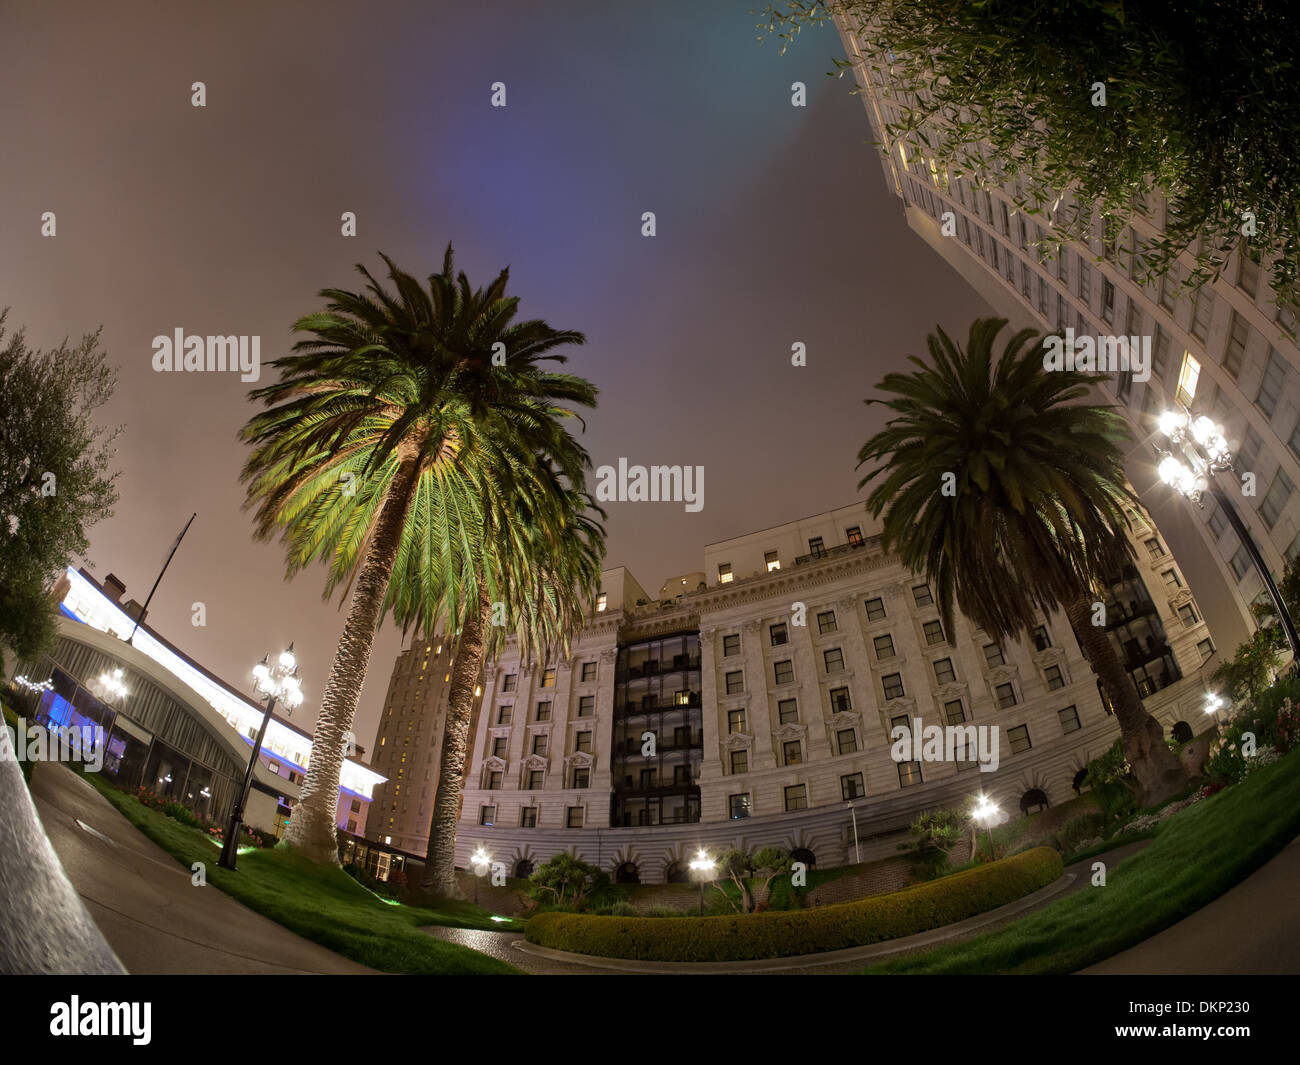 Eine Nacht, fisheye Blick auf das Fairmont San Francisco Hotel vom Dachgarten des Hotels gesehen. Stockfoto